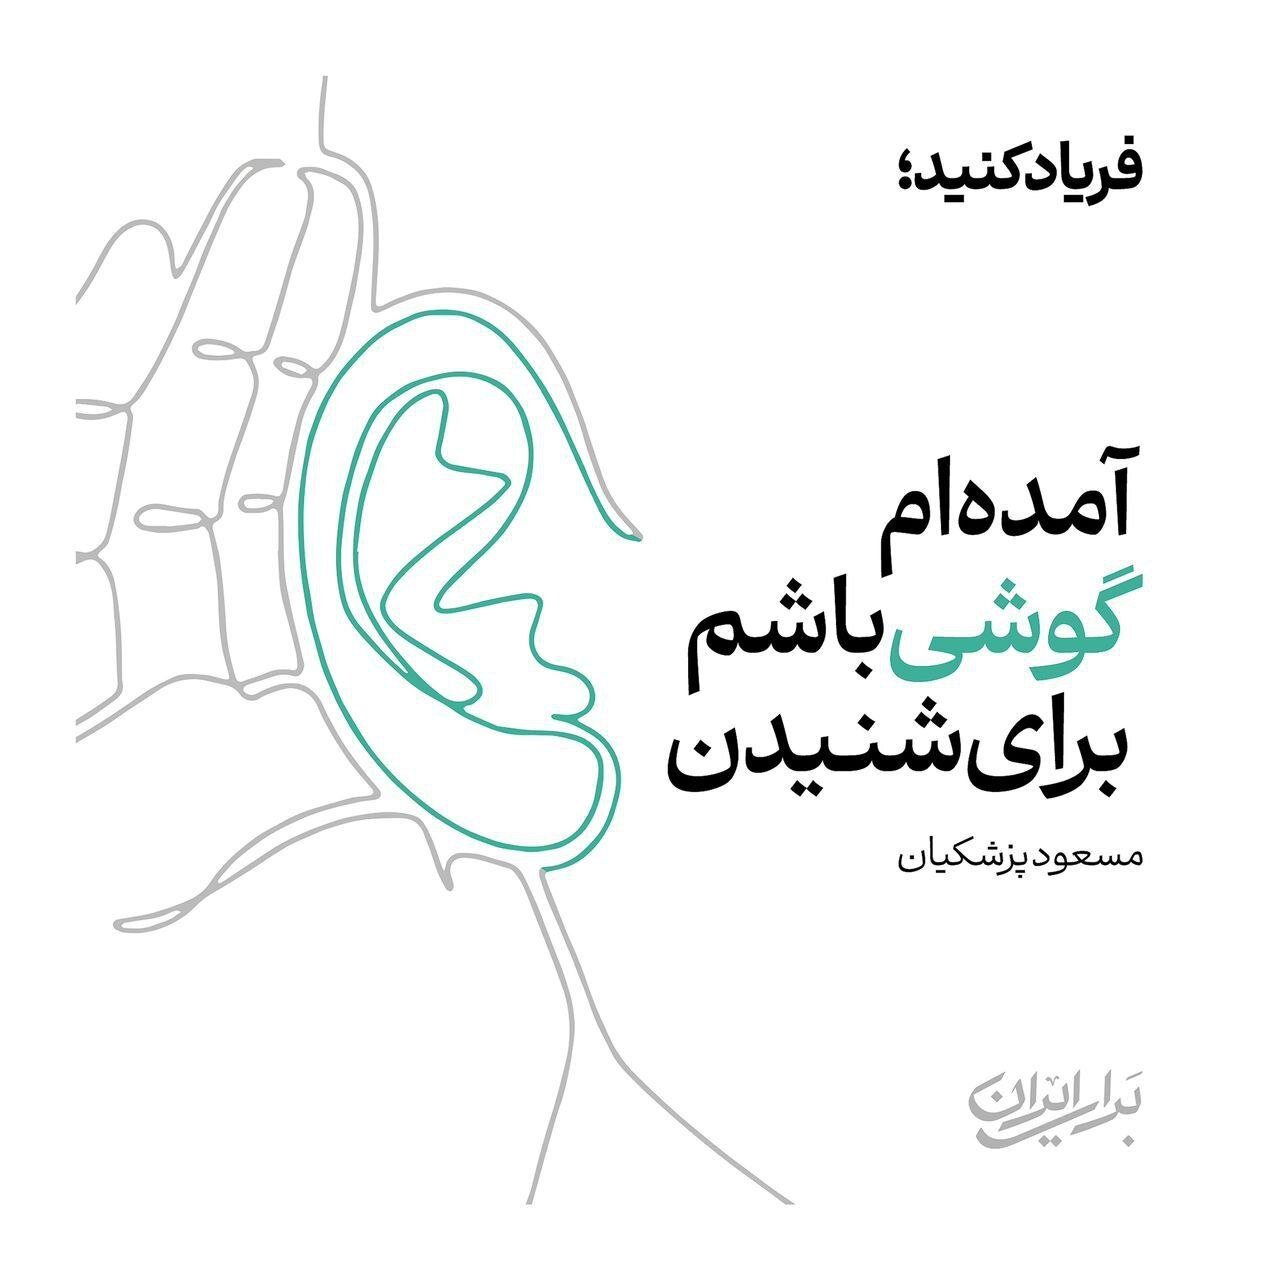 فریاد کنید / رونمایی از پوستر جدید ستاد انتخاباتی پزشکیان + عکس 2